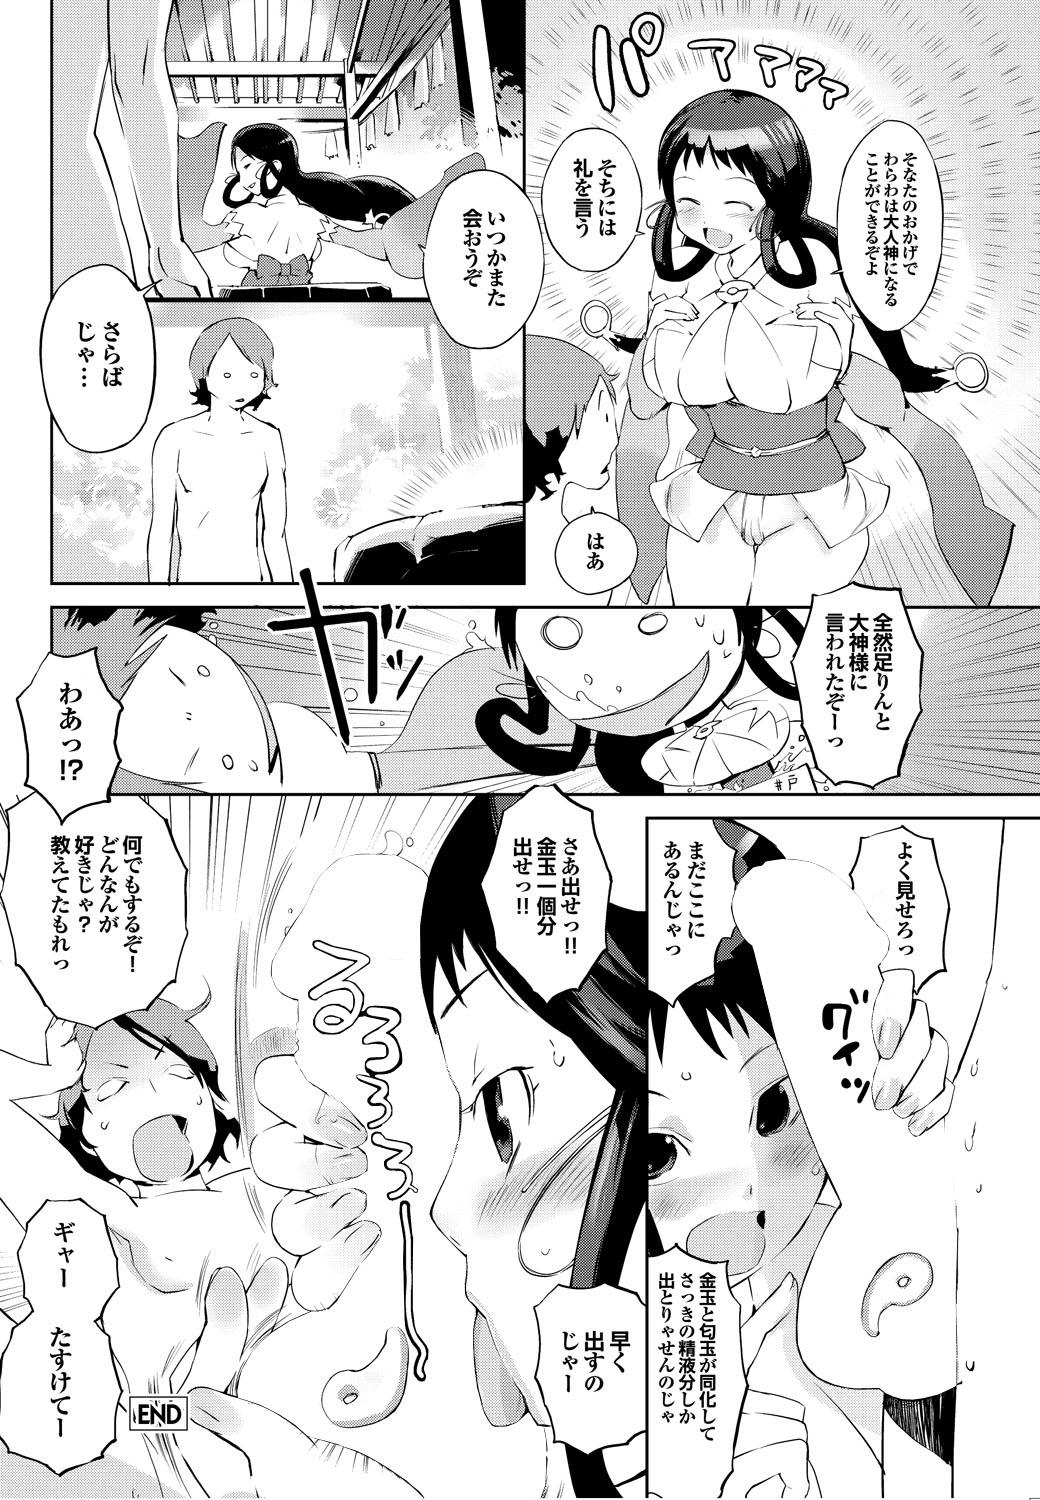 American Shinsatsu Mari Sensei 18yo - Page 159